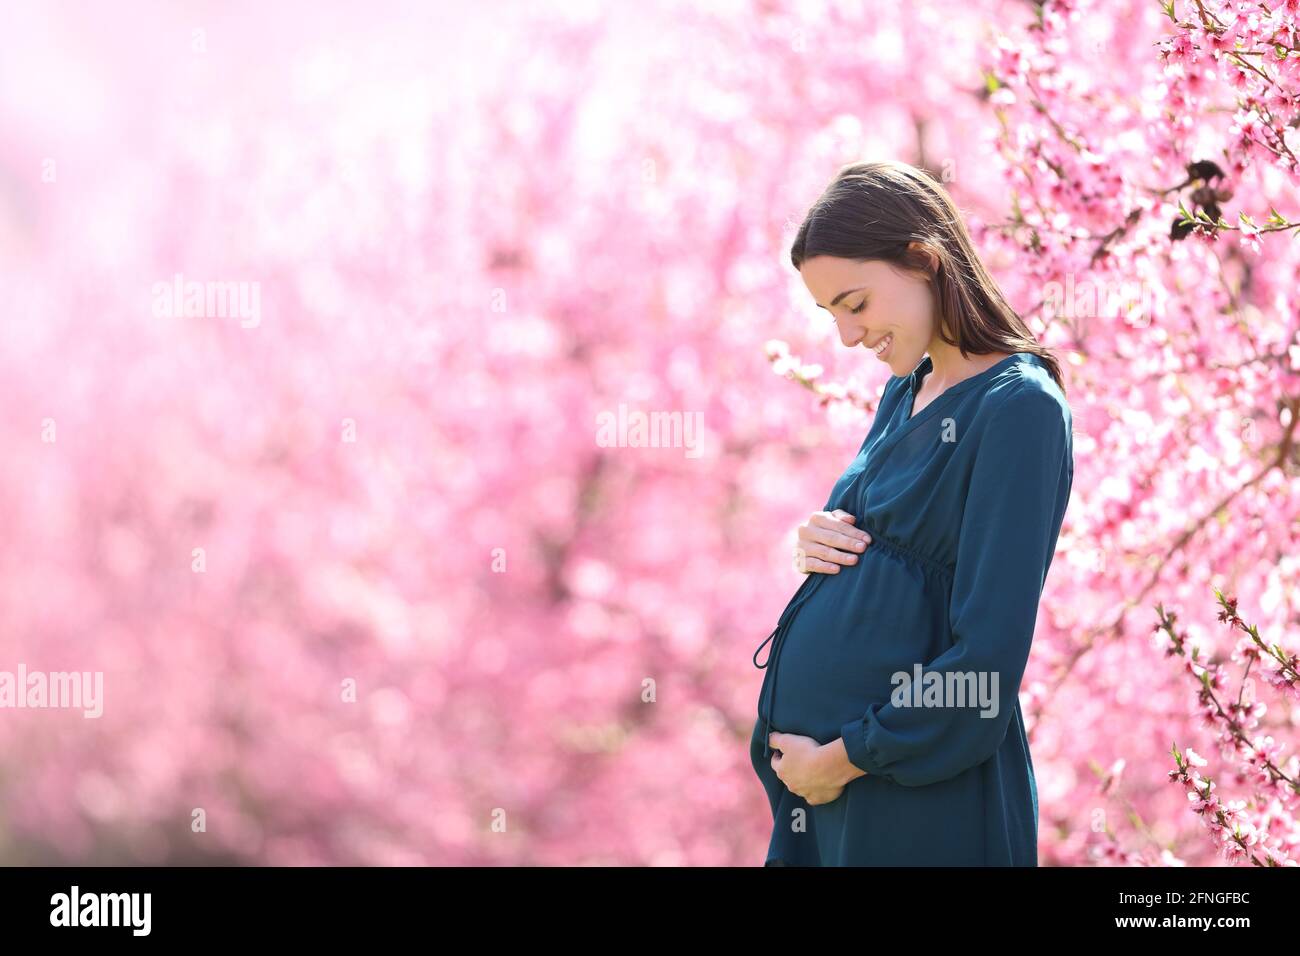 Profilo di una donna incinta che guarda la pancia in un campo rosa nella stagione primaverile Foto Stock